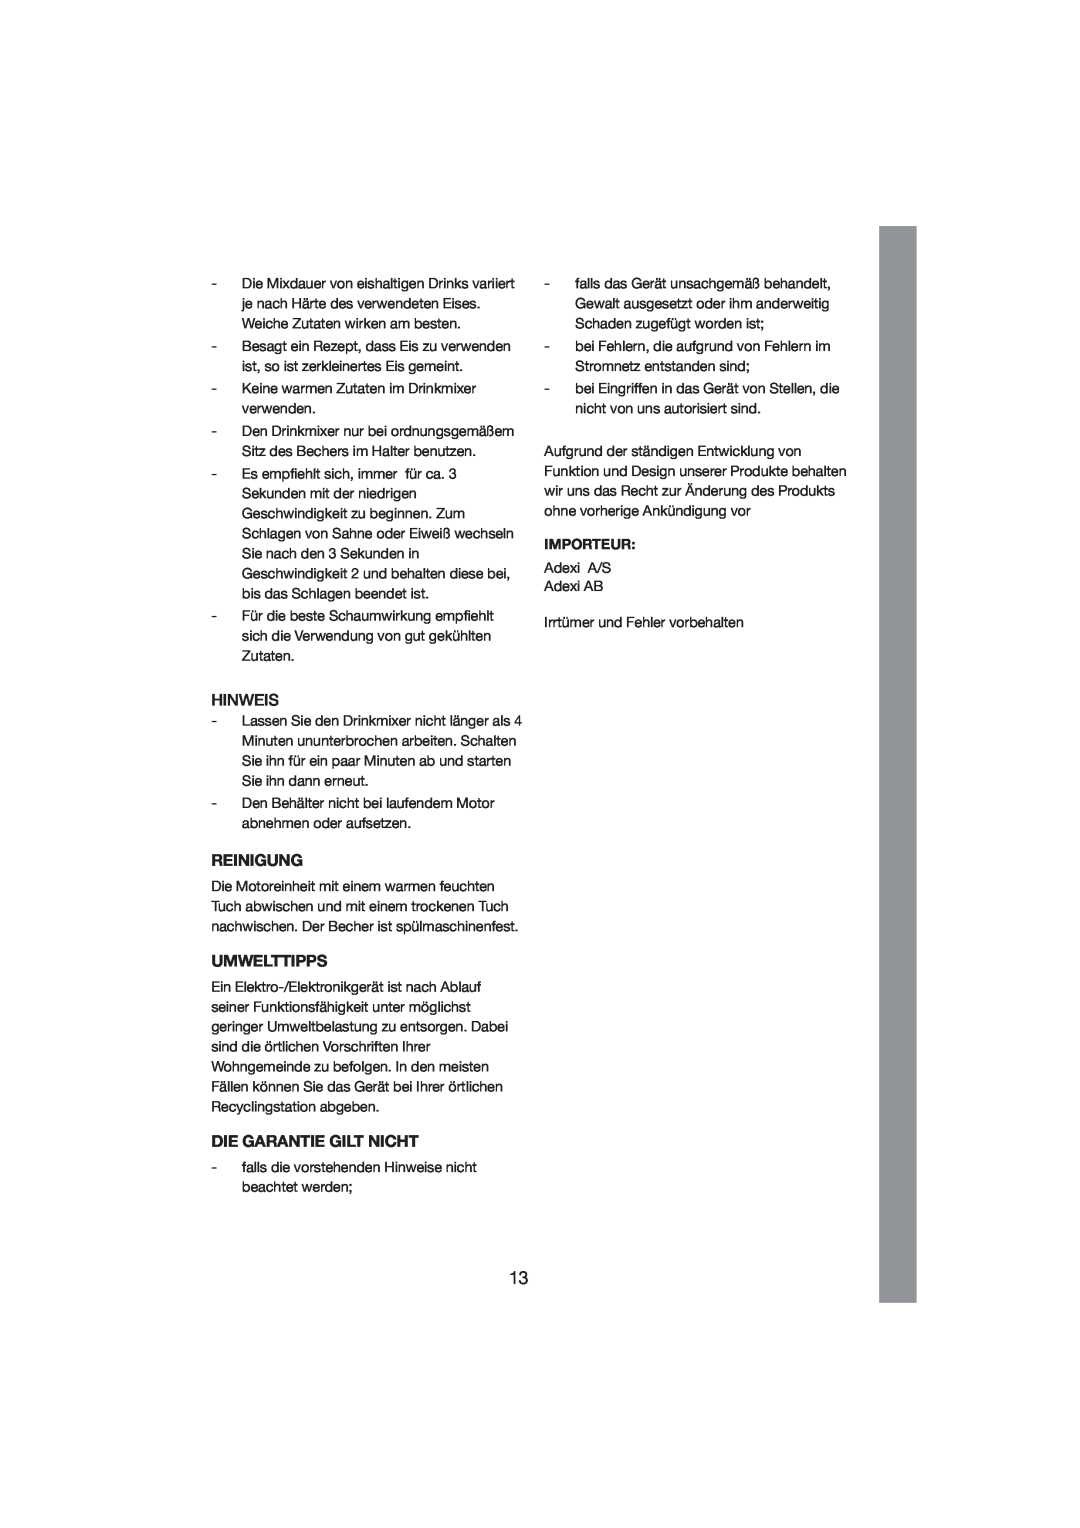 Melissa 246-002 manual Reinigung, Umwelttipps, Die Garantie Gilt Nicht, Hinweis, Importeur 